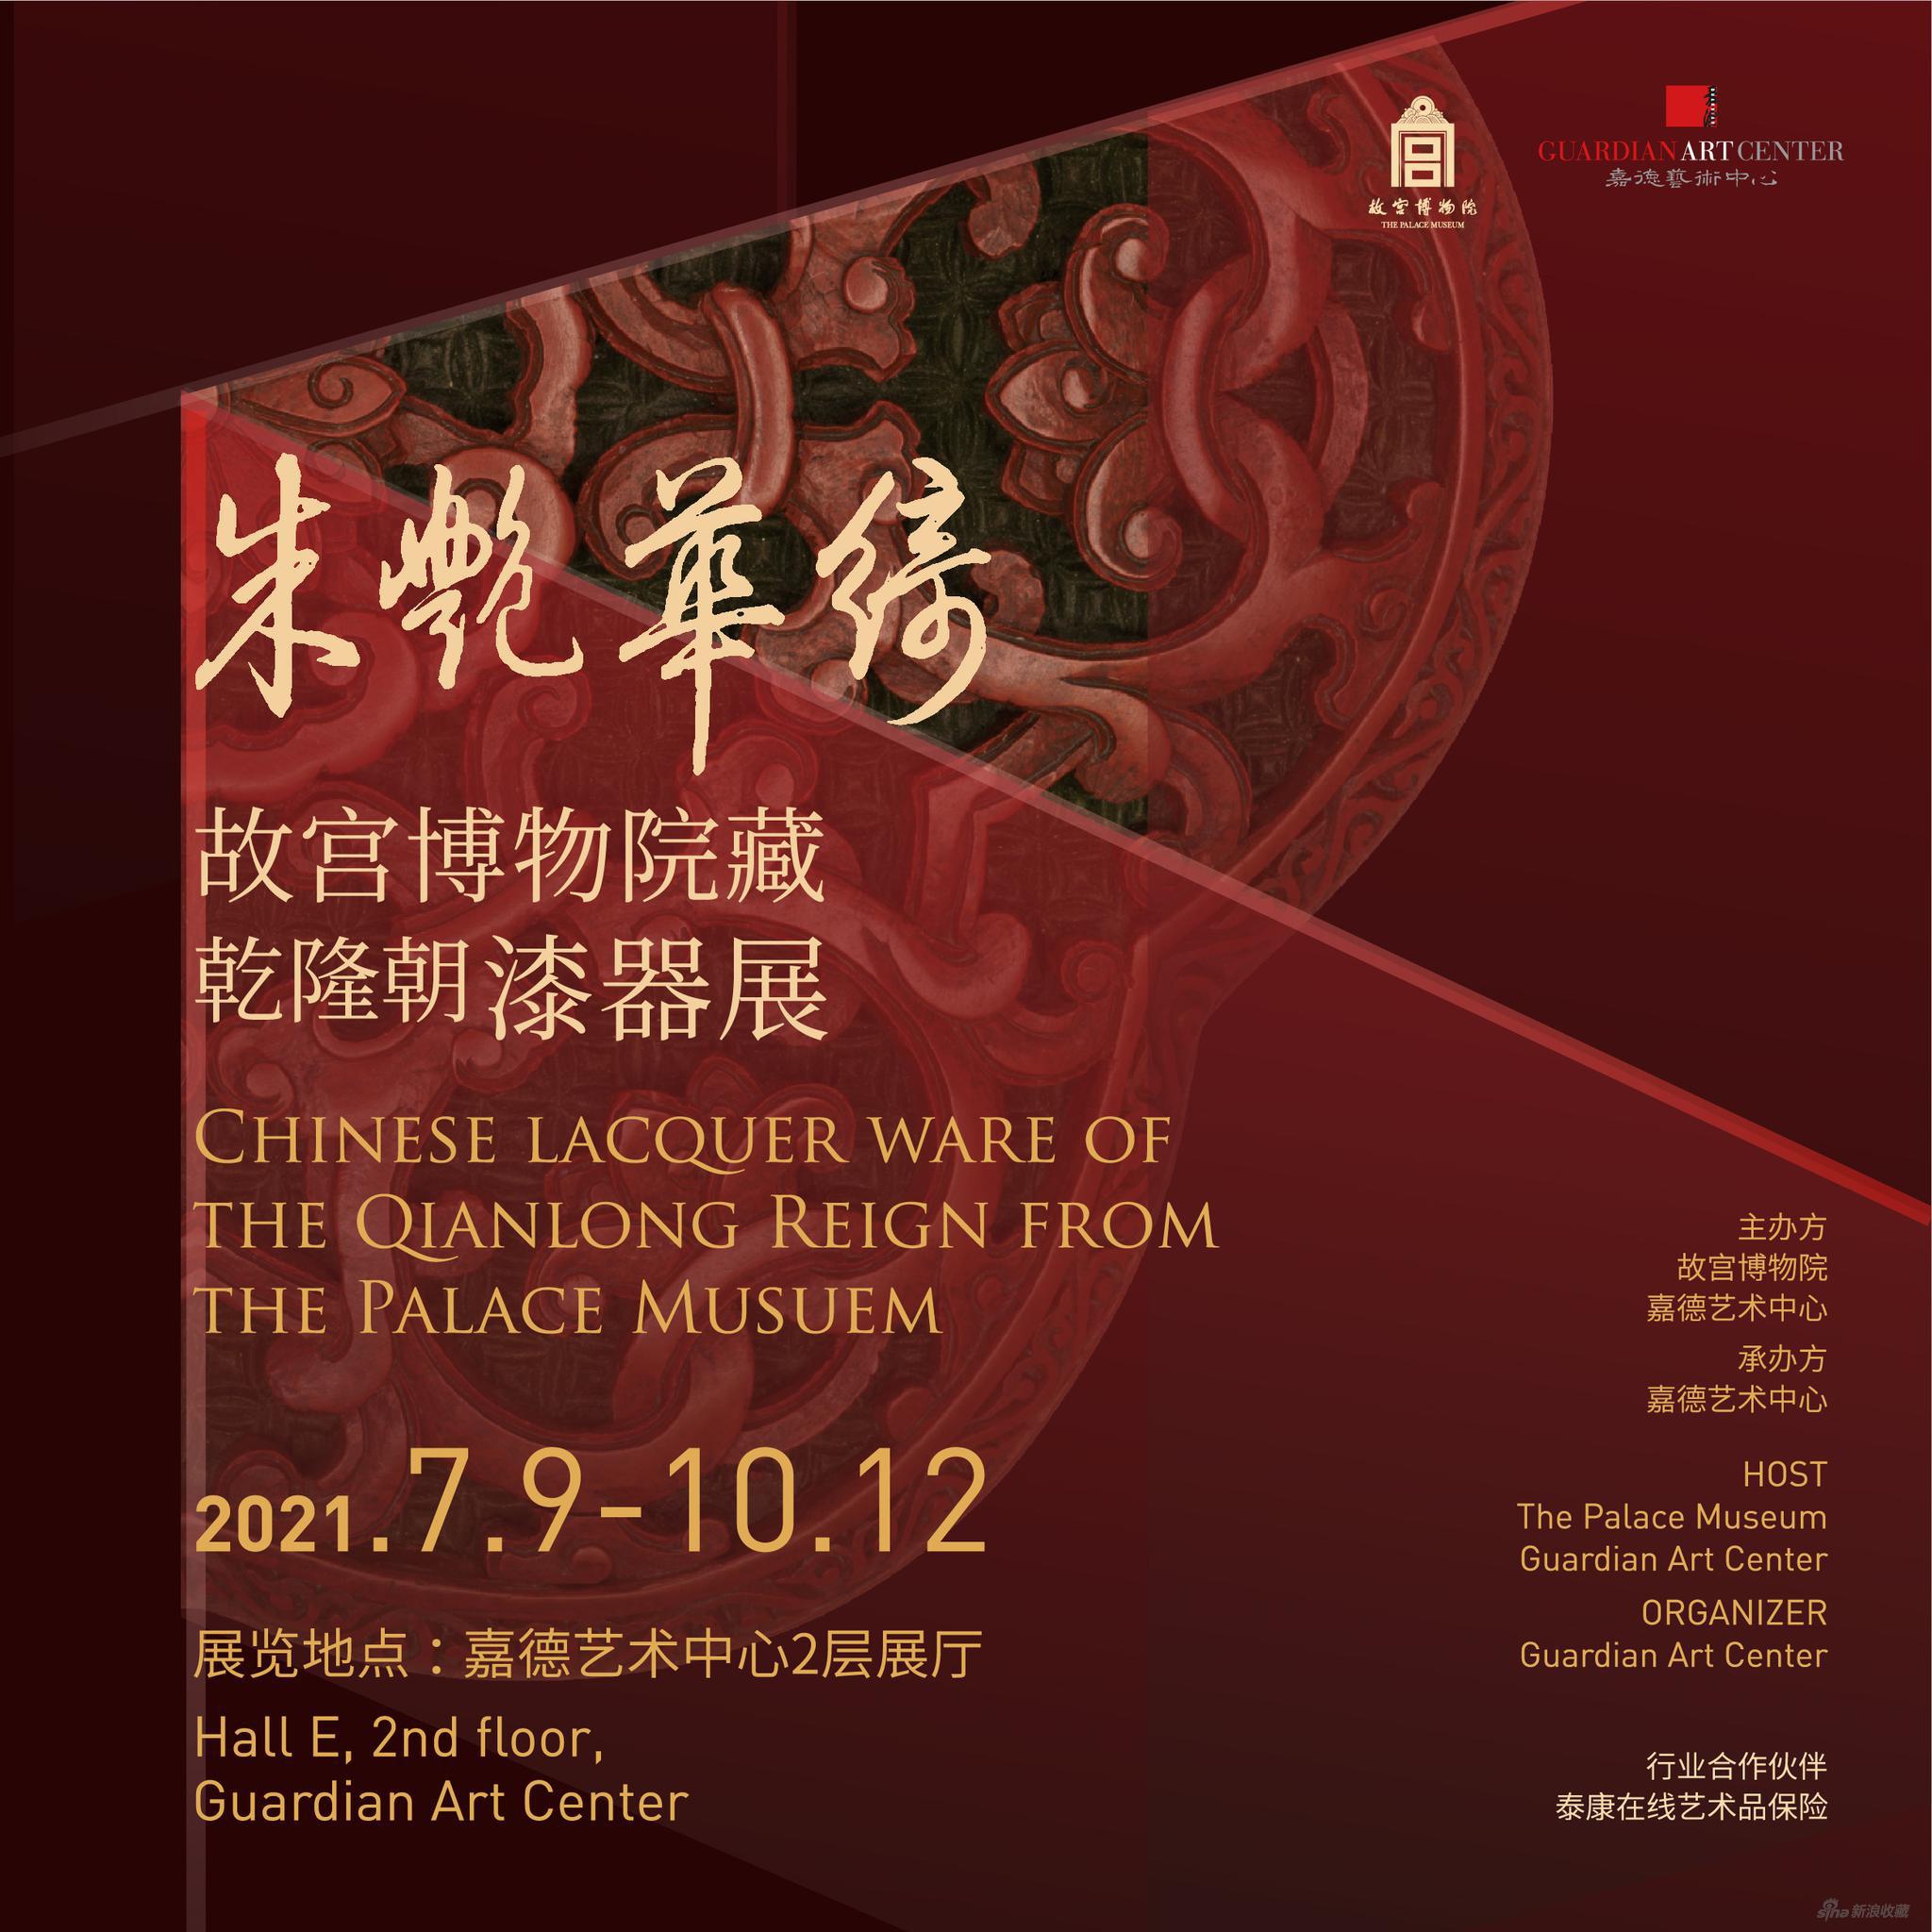 展览海报《朱艳华绮——故宫博物院藏乾隆朝漆器展》将于2021年7月9日